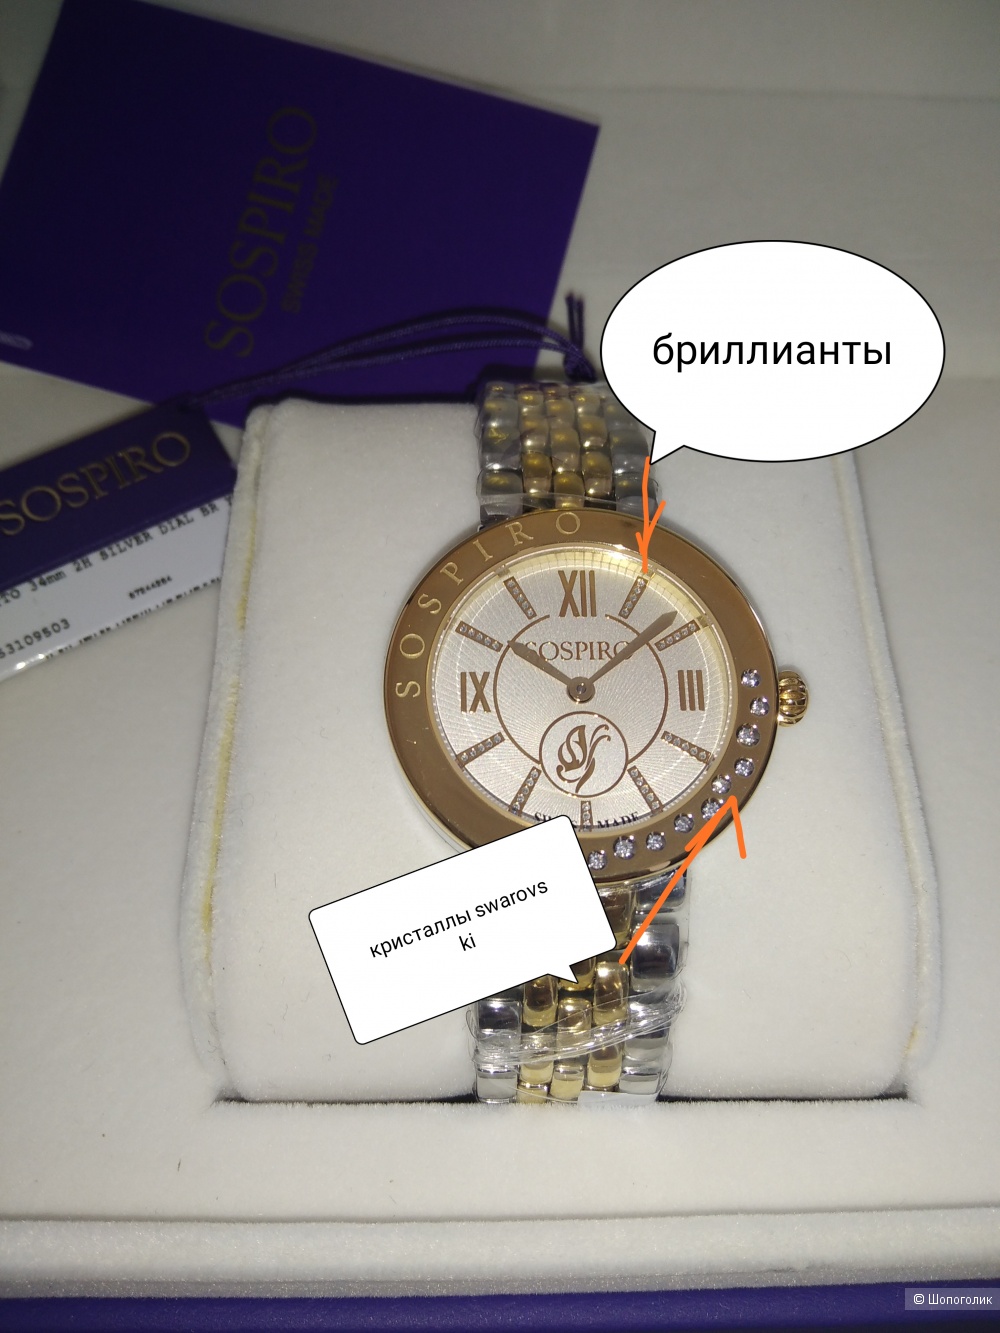 Часы "Sospiro" с бриллиантами.